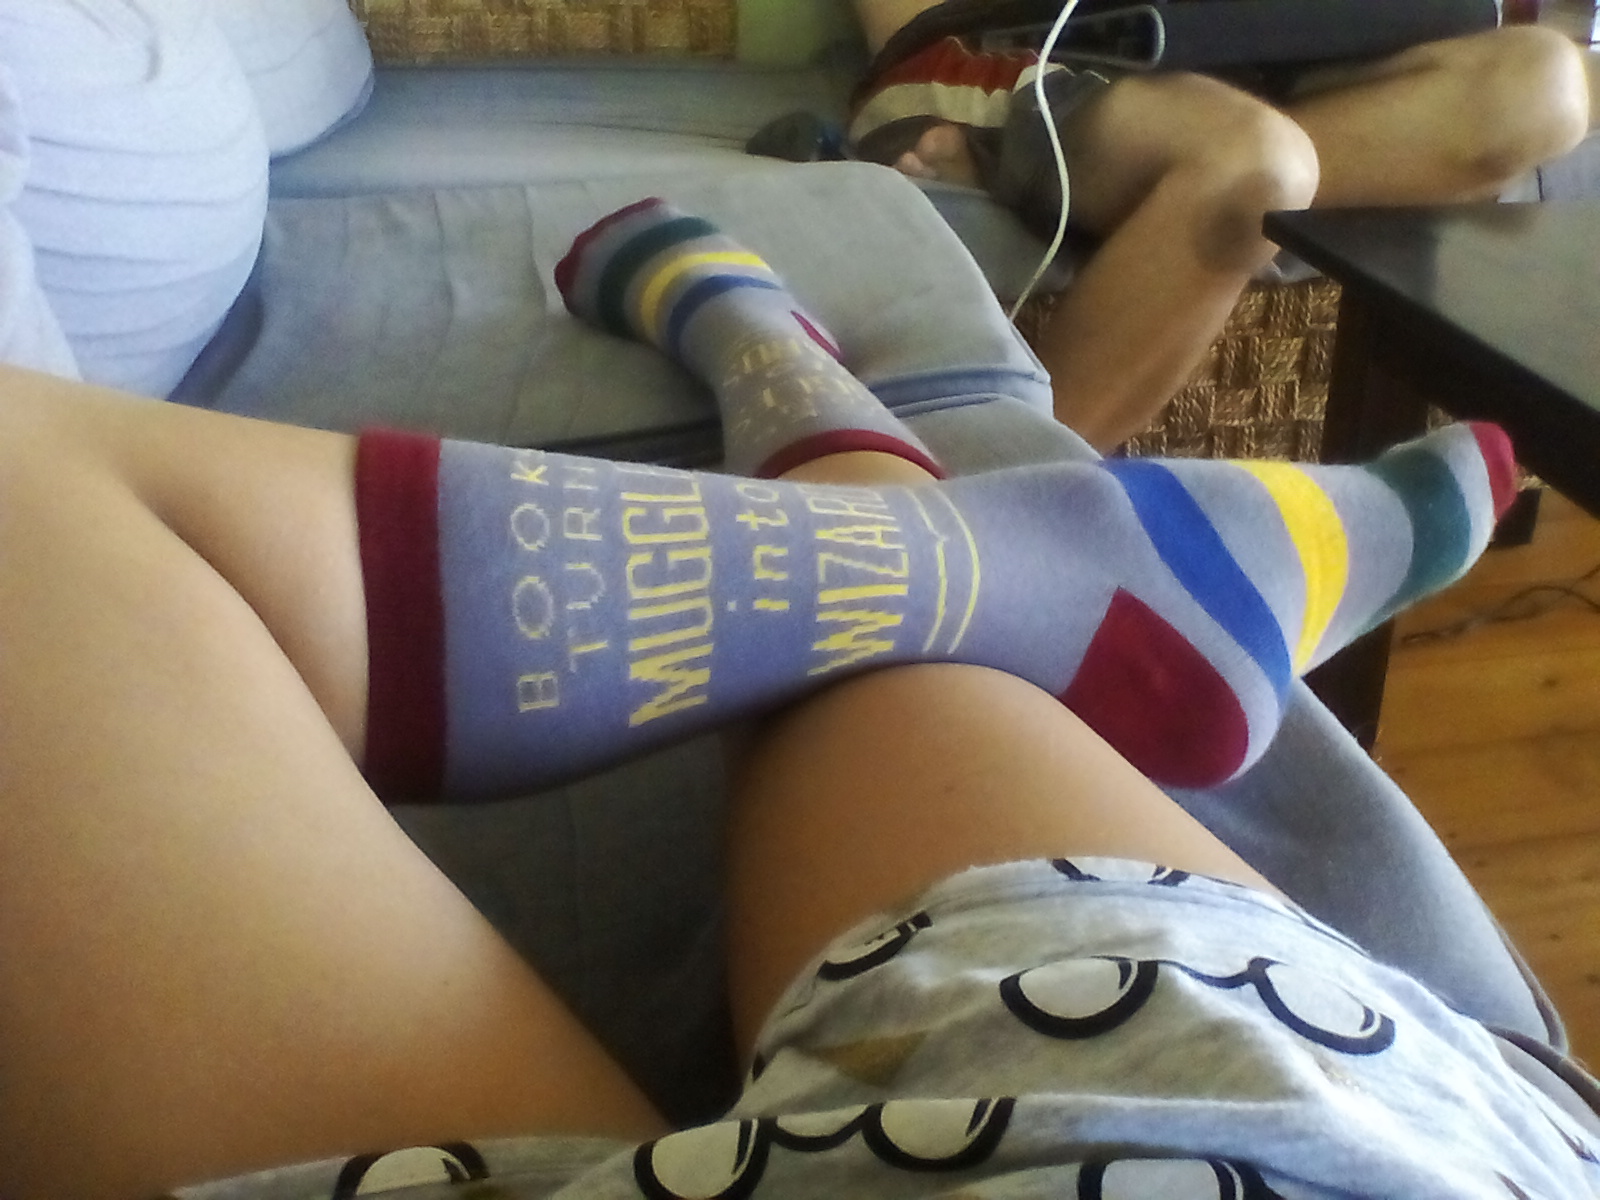 Harry Potter socks